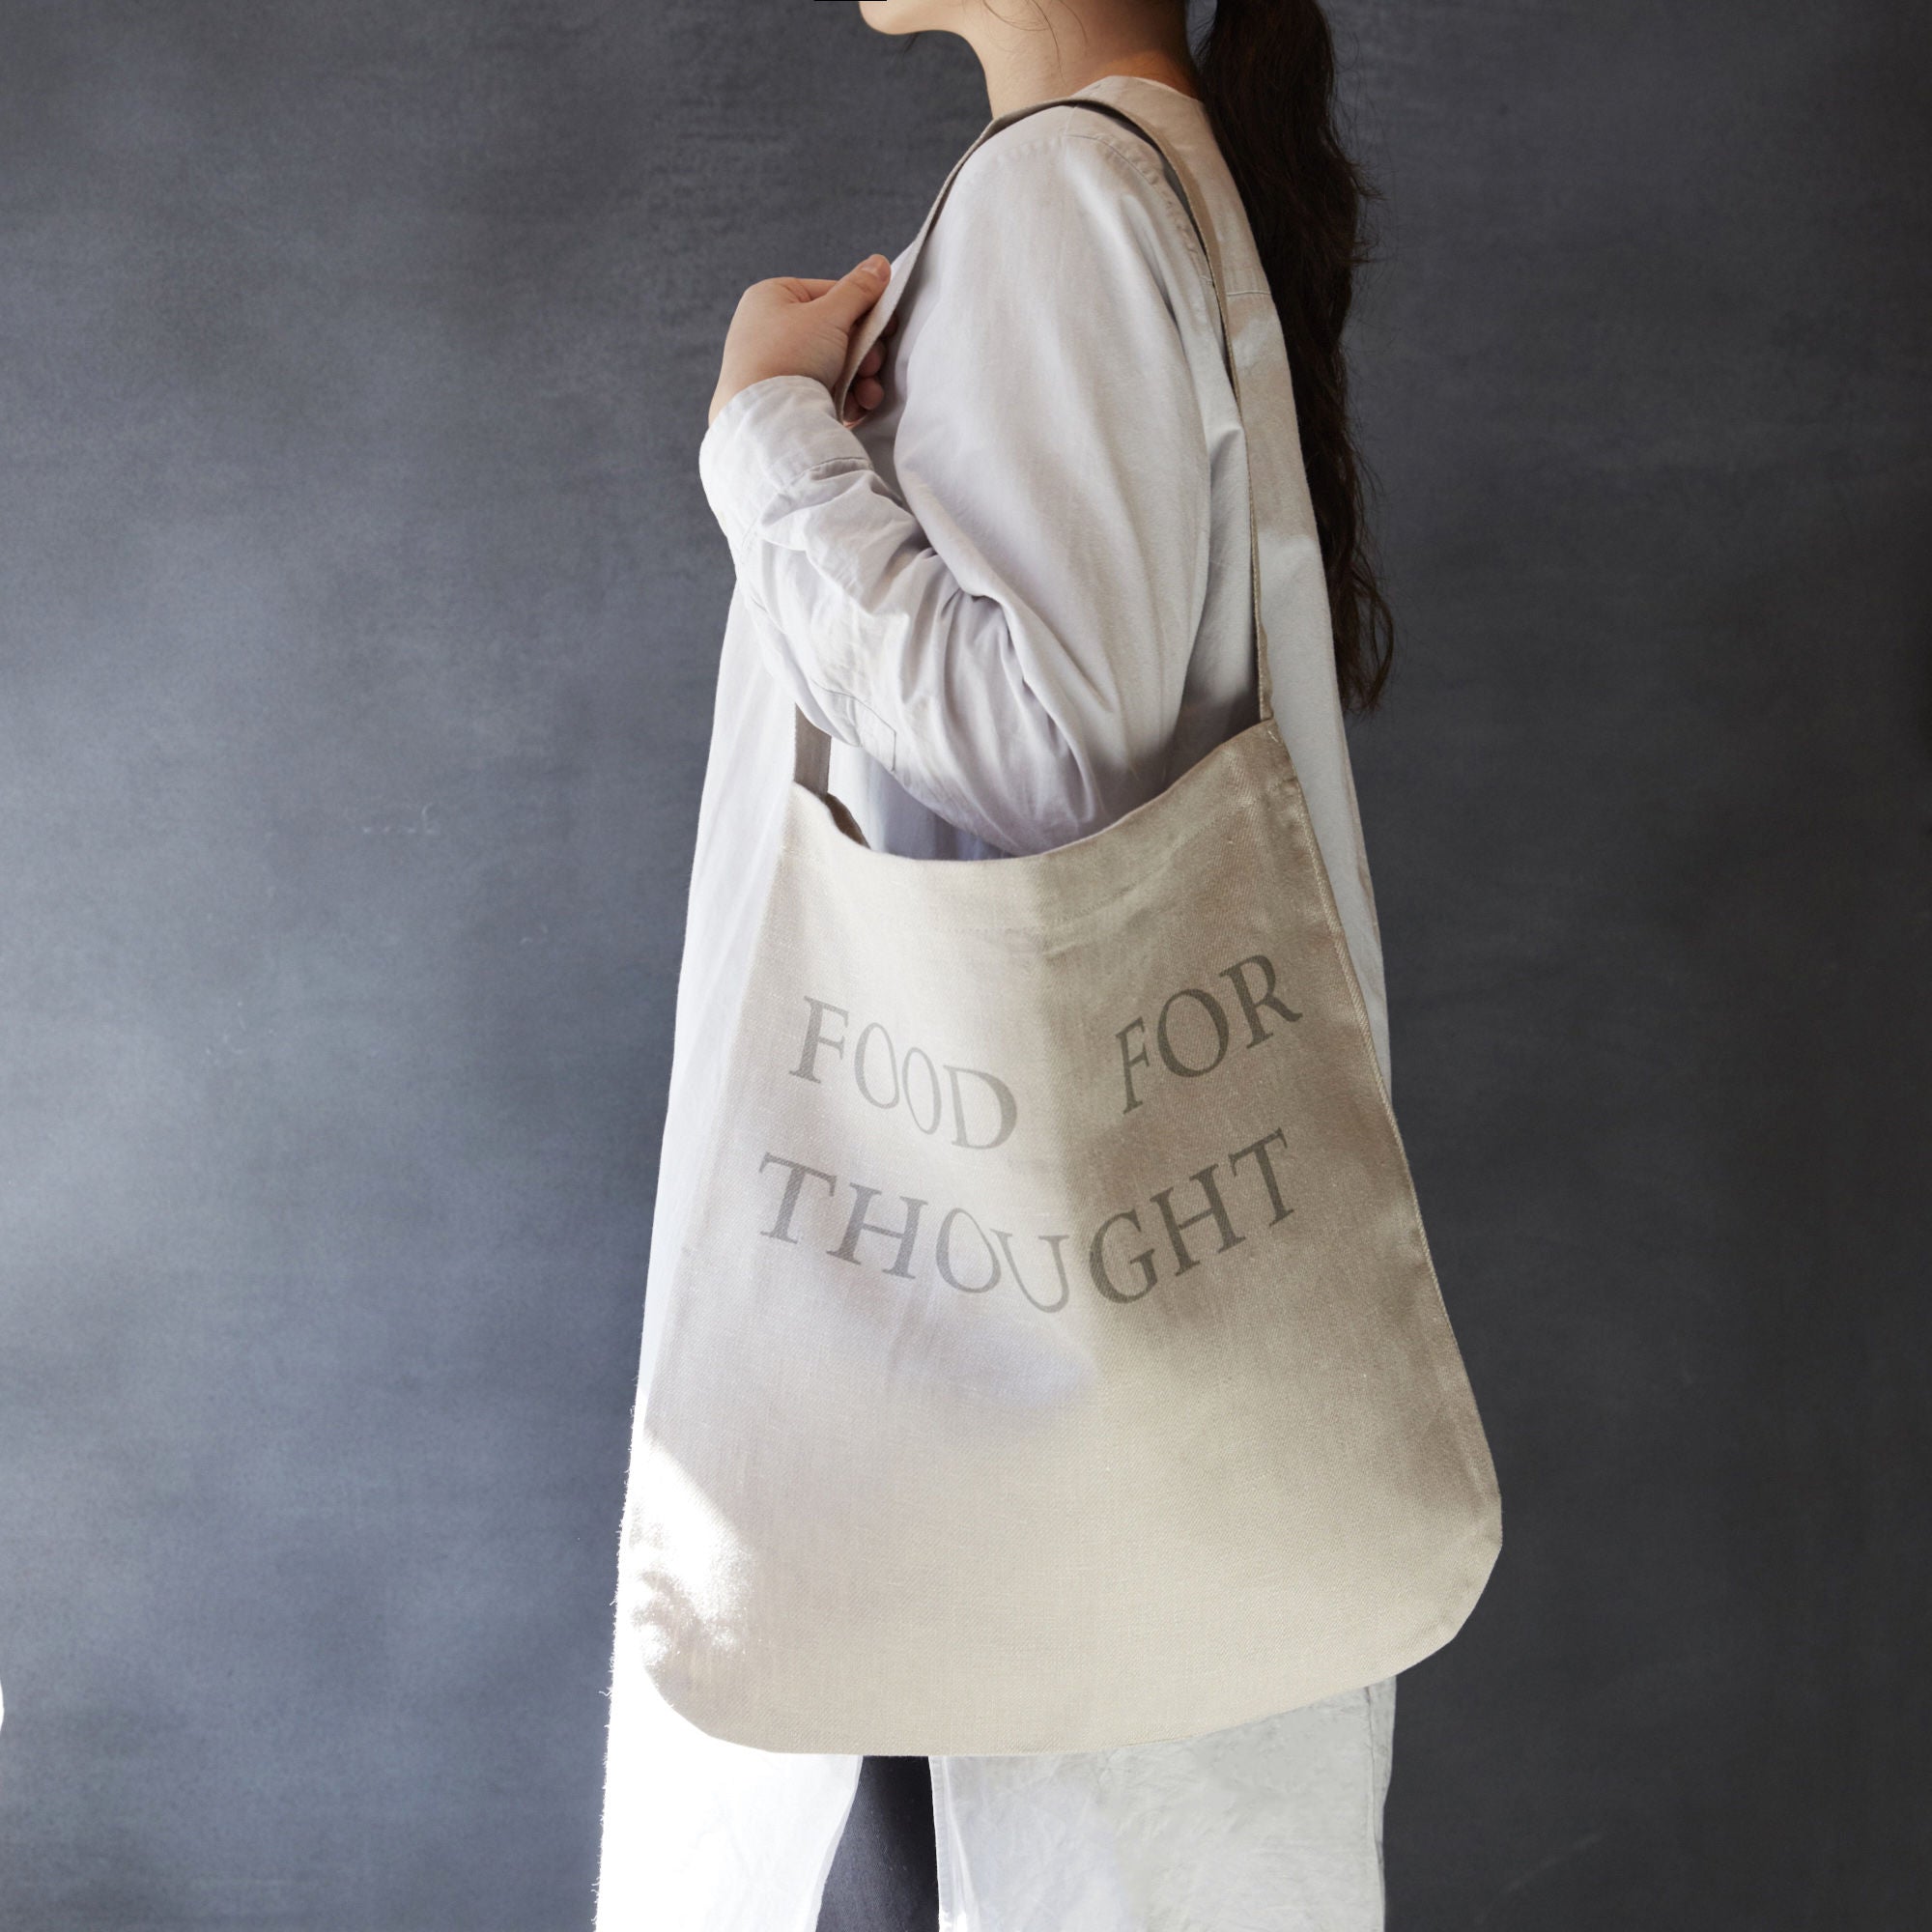 one-handle tote bag / light gray